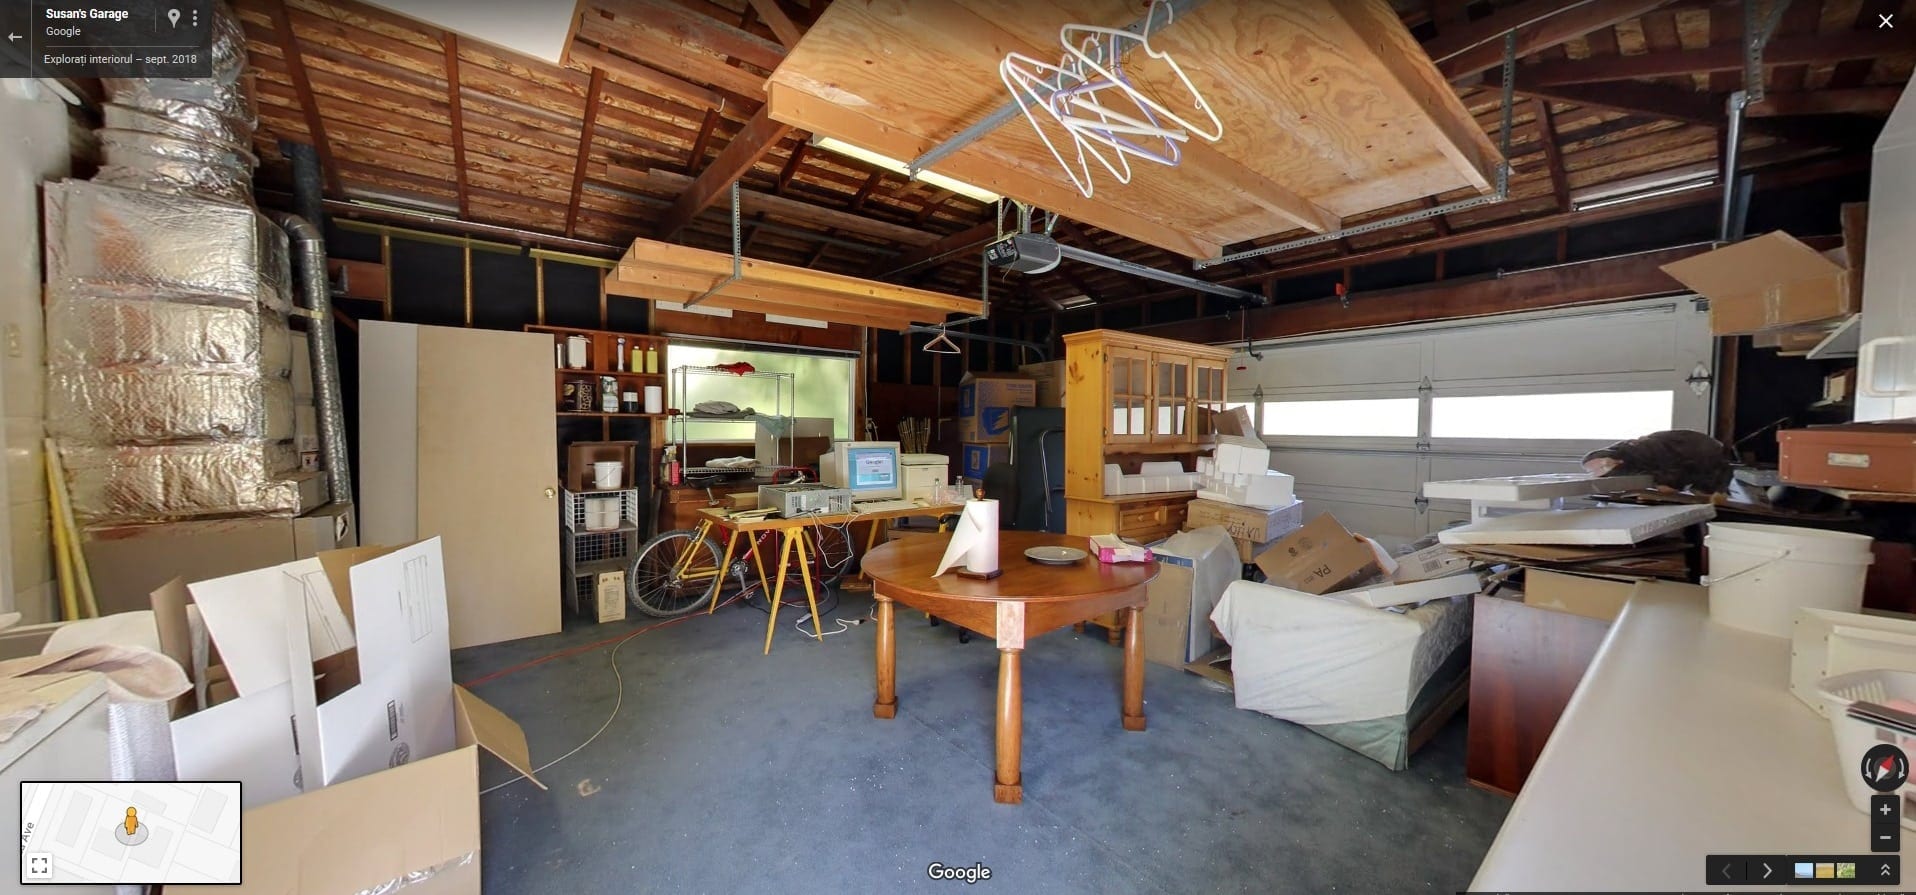 Google celebrează 20 de ani: vezi video cum arăta garajul în care a funcționat primul birou Google